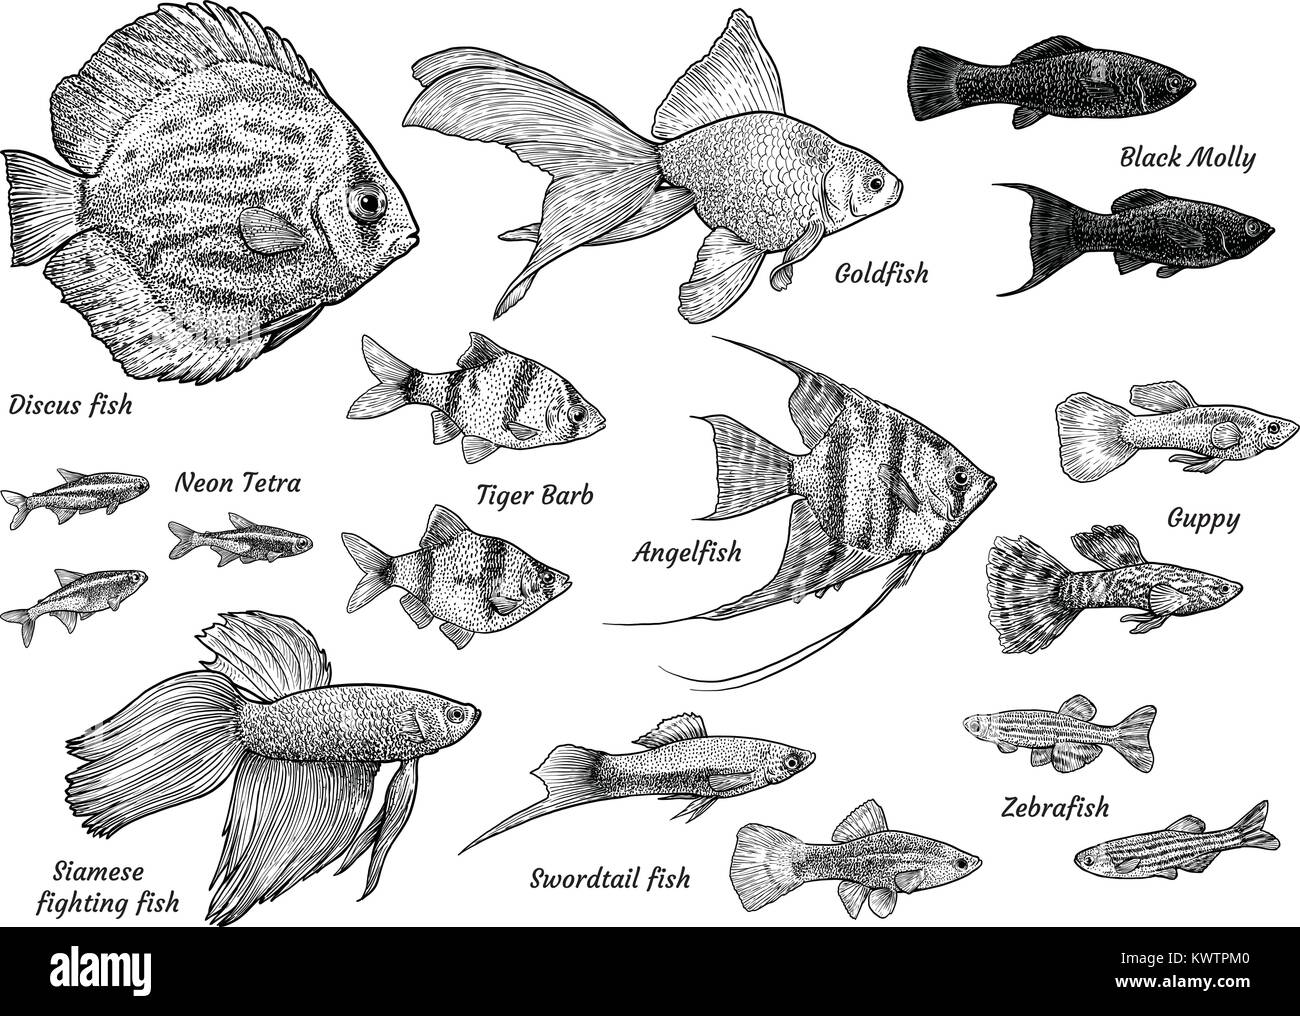 Collection de poissons d'aquarium d'illustration, dessin, gravure, encre, dessin au trait, vector Illustration de Vecteur